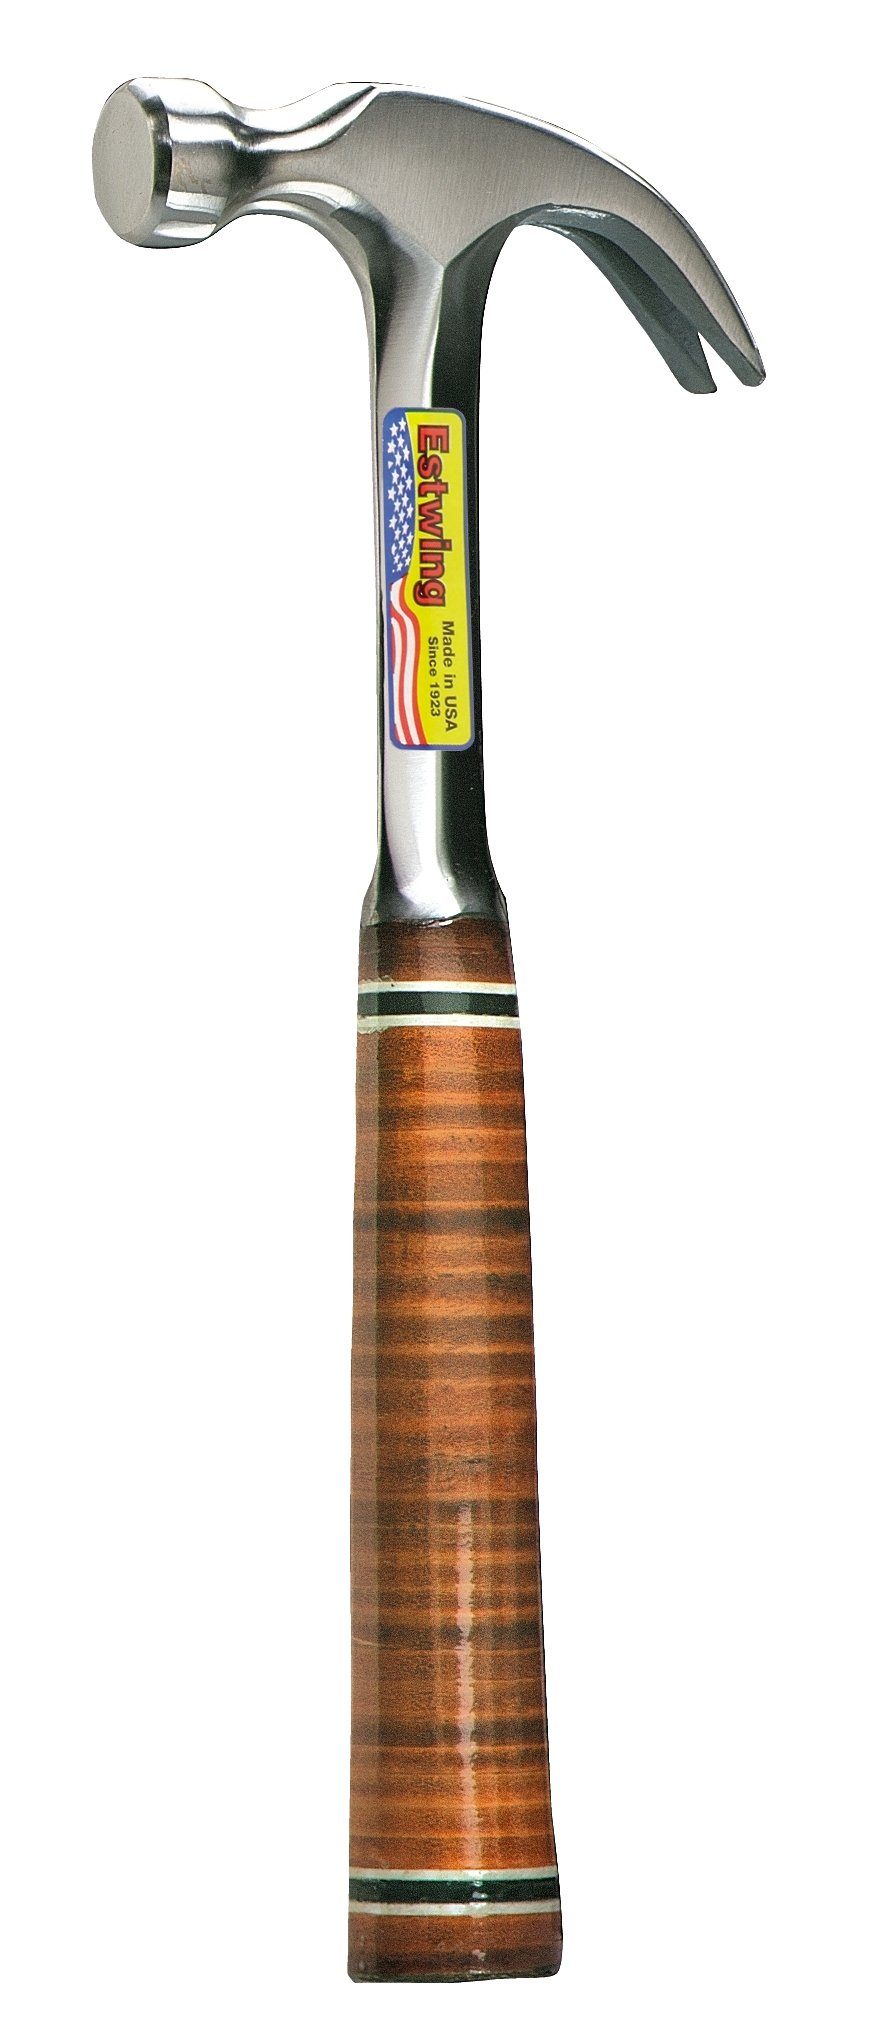 Estwing Hammer ESTWING Klauenhammer mit Ledergriff, gekröpft, Ø27mm 560g